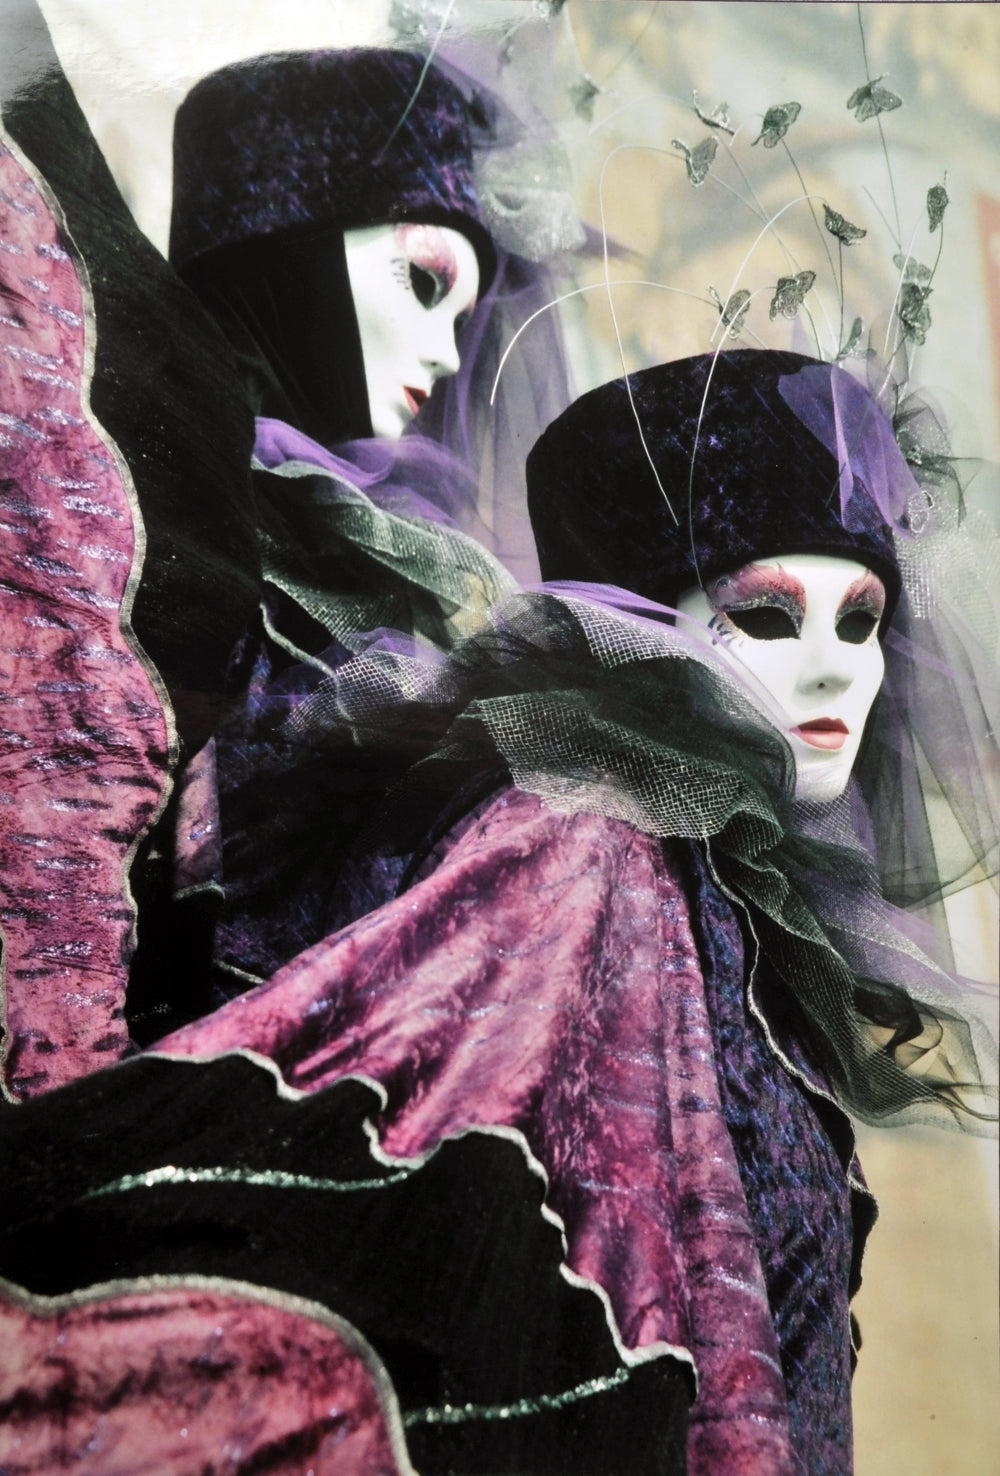 Carnival of masks in Venice